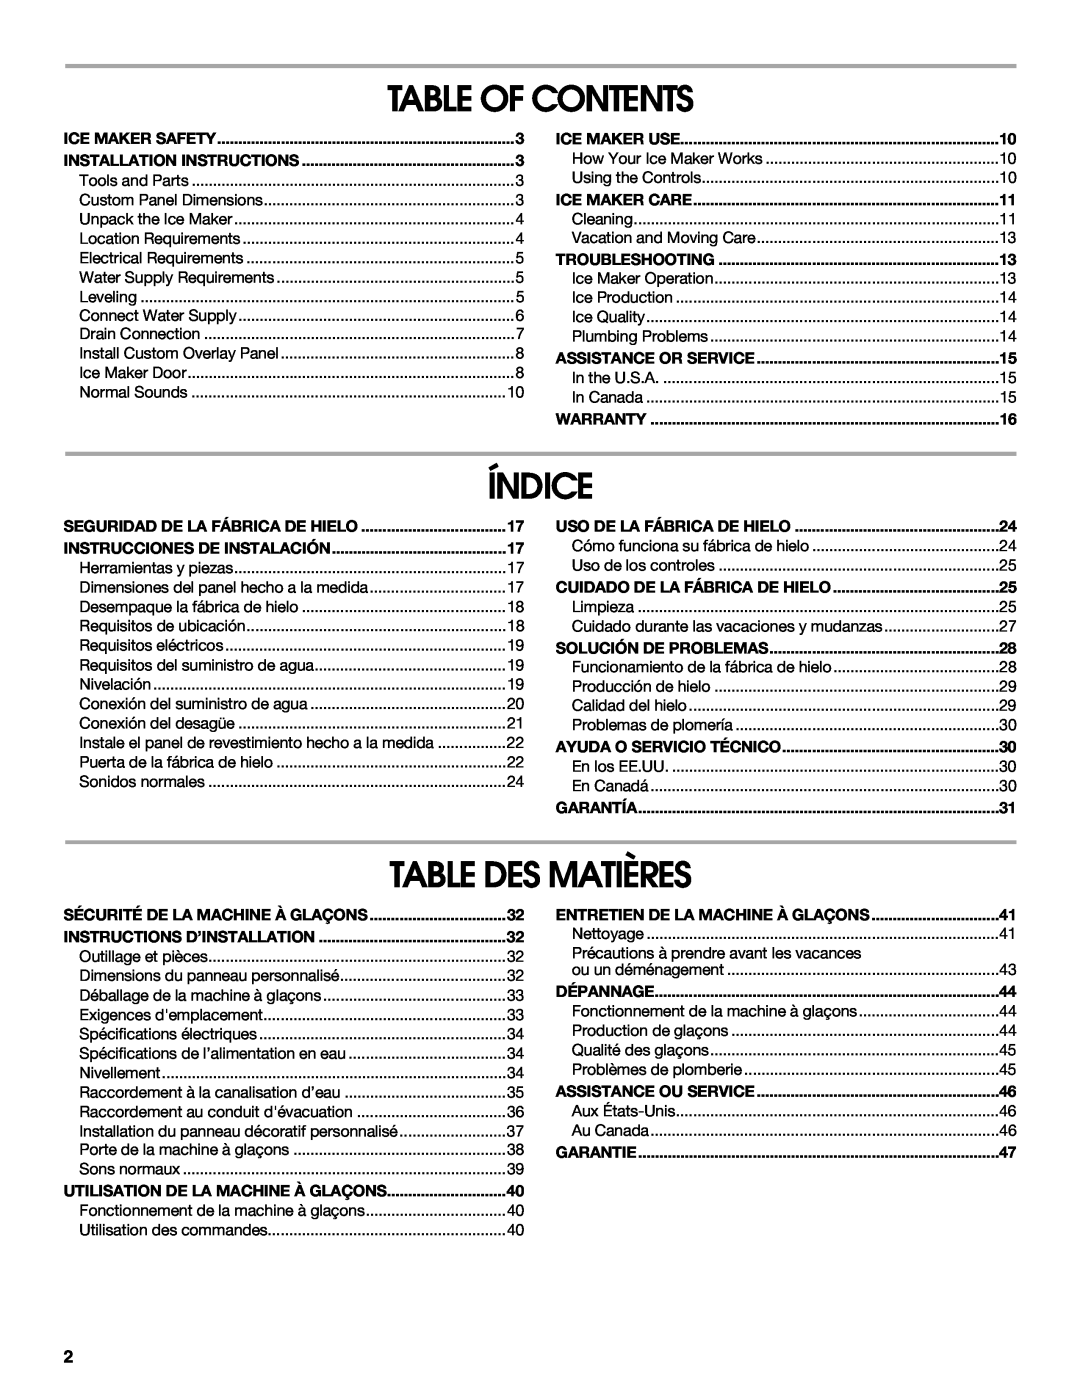 Jenn-Air W10136129C manual Table Of Contents, Índice, Table Des Matières 